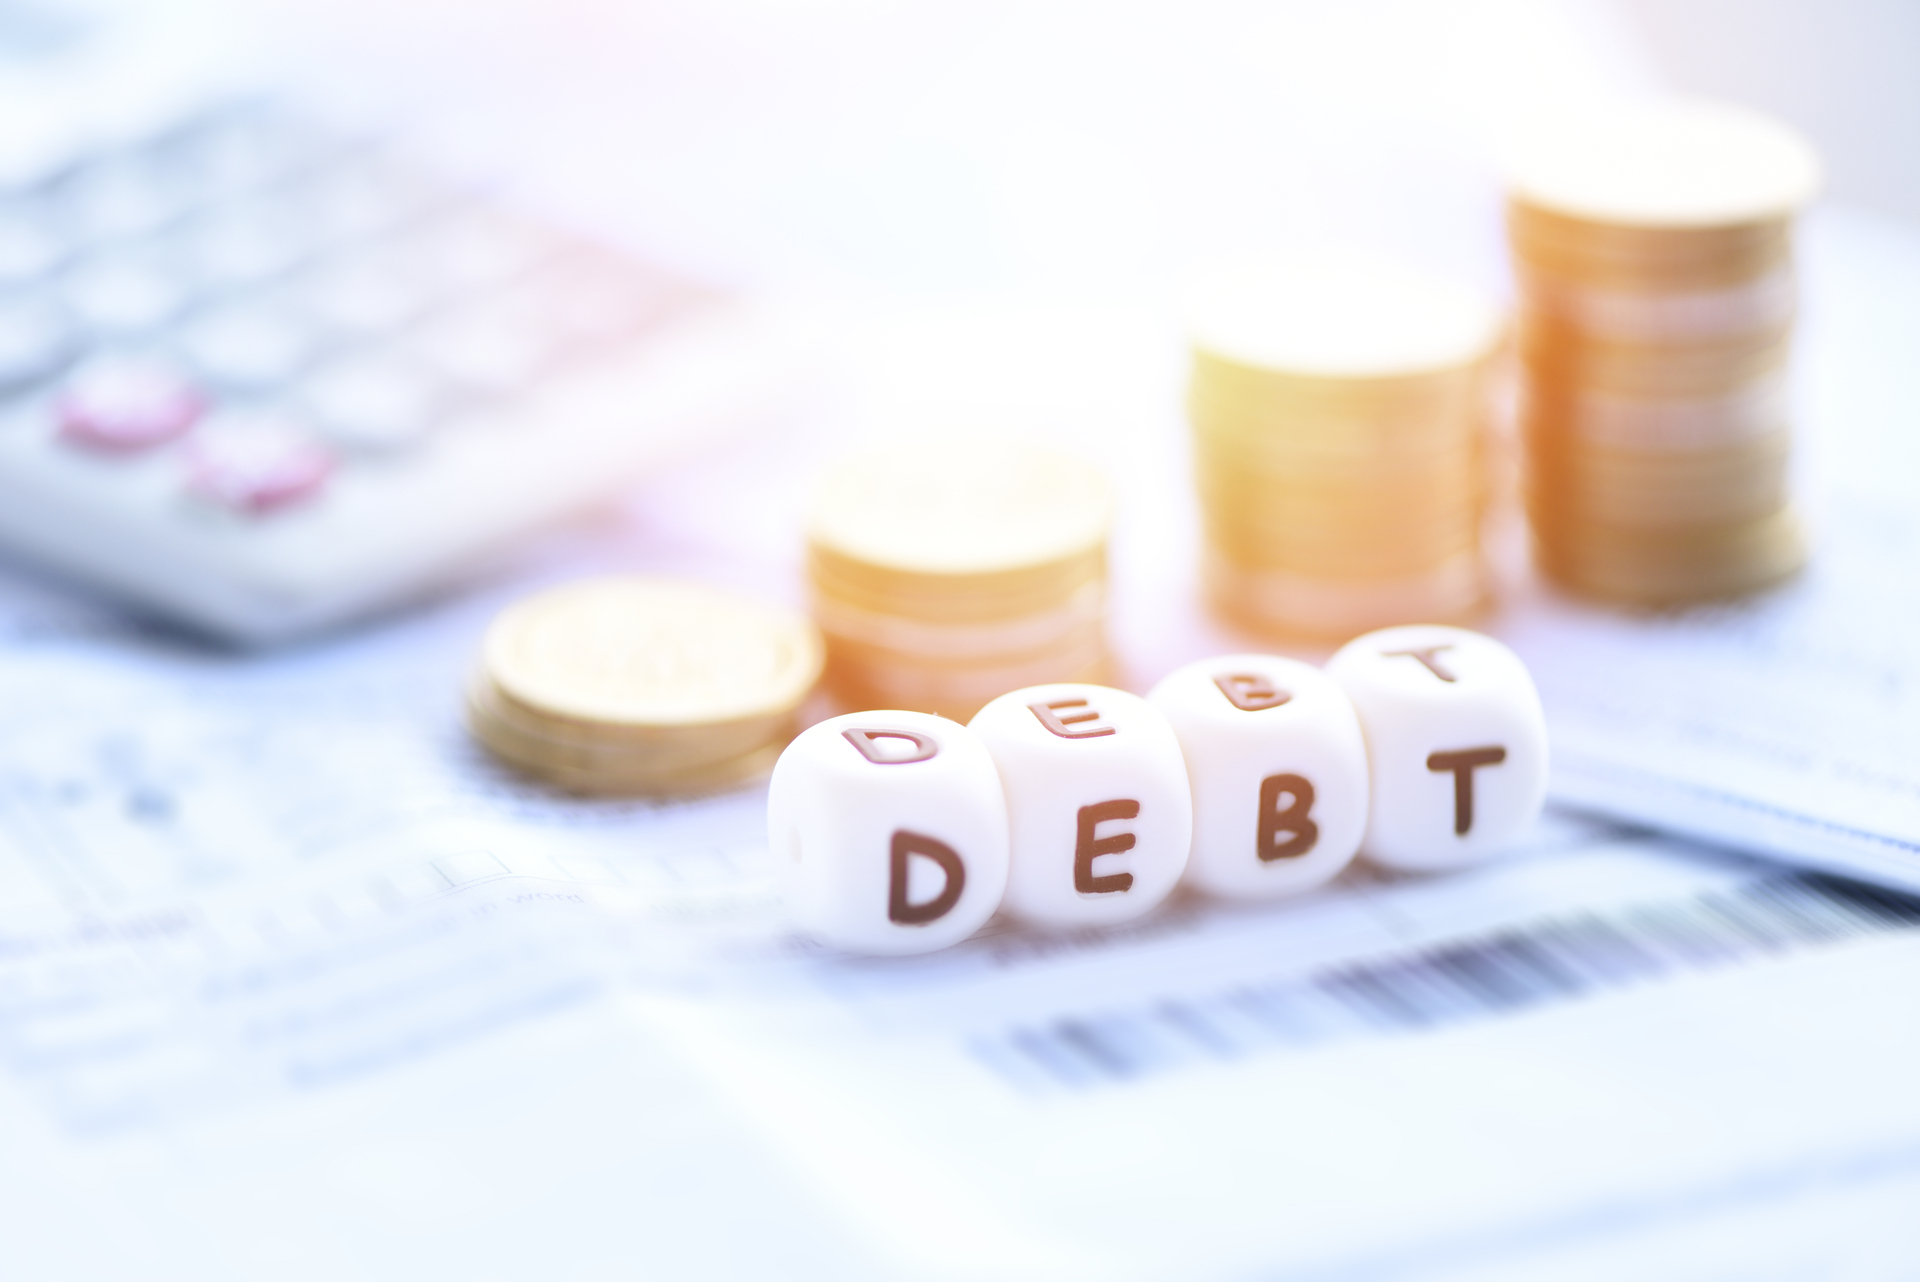 Kostki ułożone w słowo "debt", które symbolizuje dług publiczny